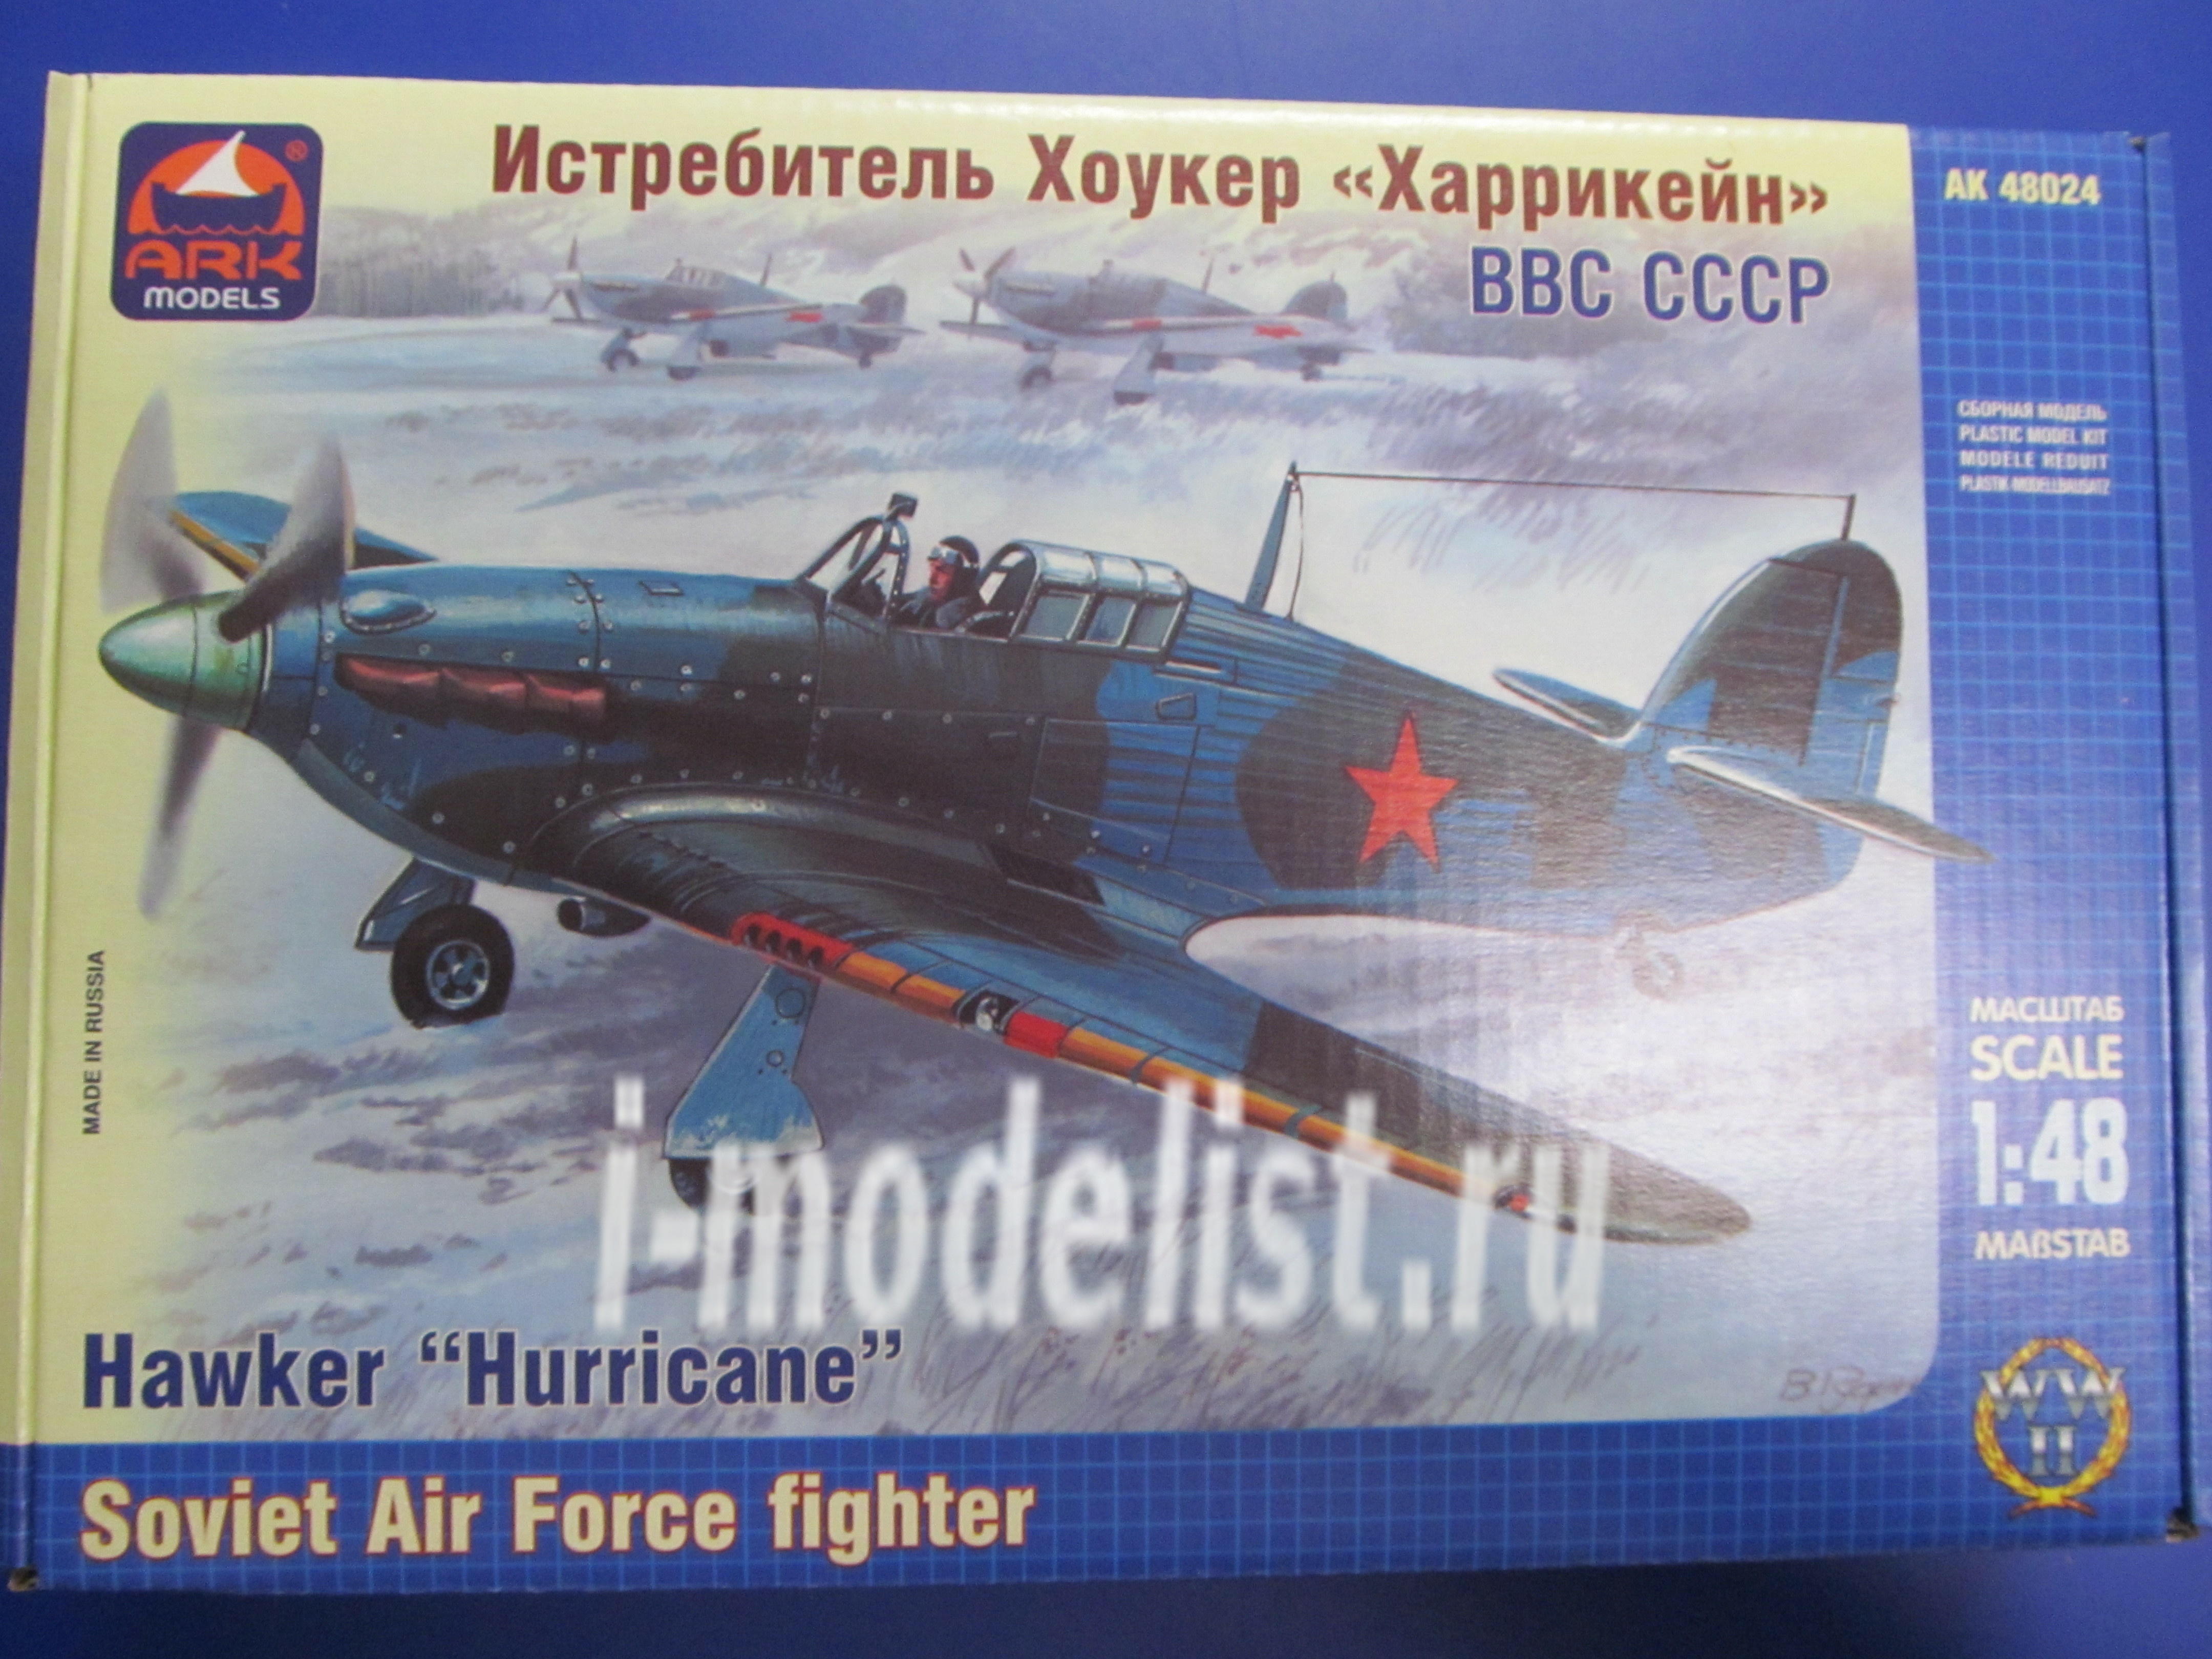 48024 ARK-models 1/48 Hurricane fighter I Soviet air force